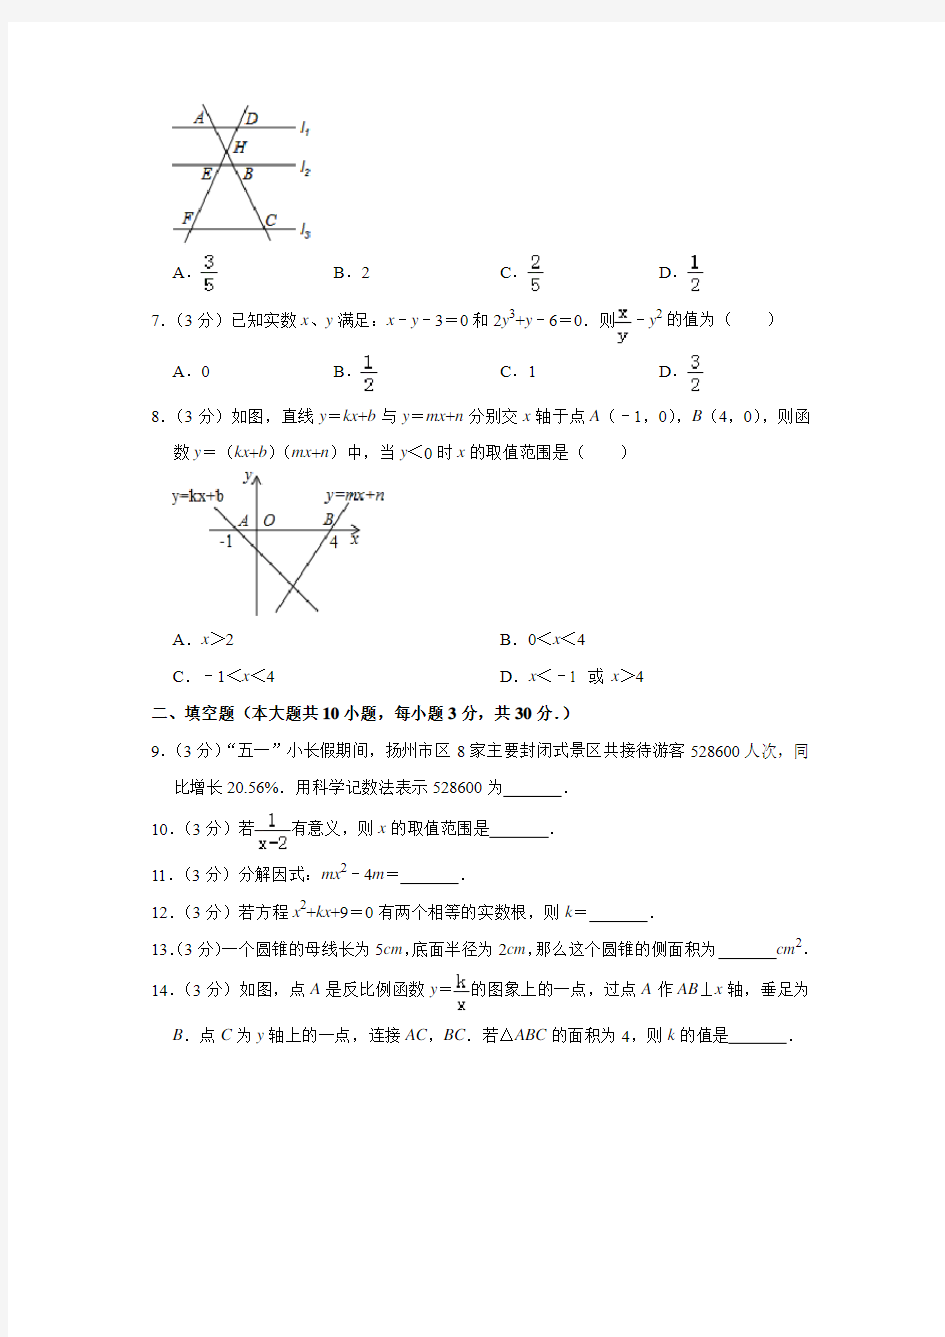 【初升高】河北邯郸市第四中学2020中考提前自主招生数学模拟试卷(9套)附解析